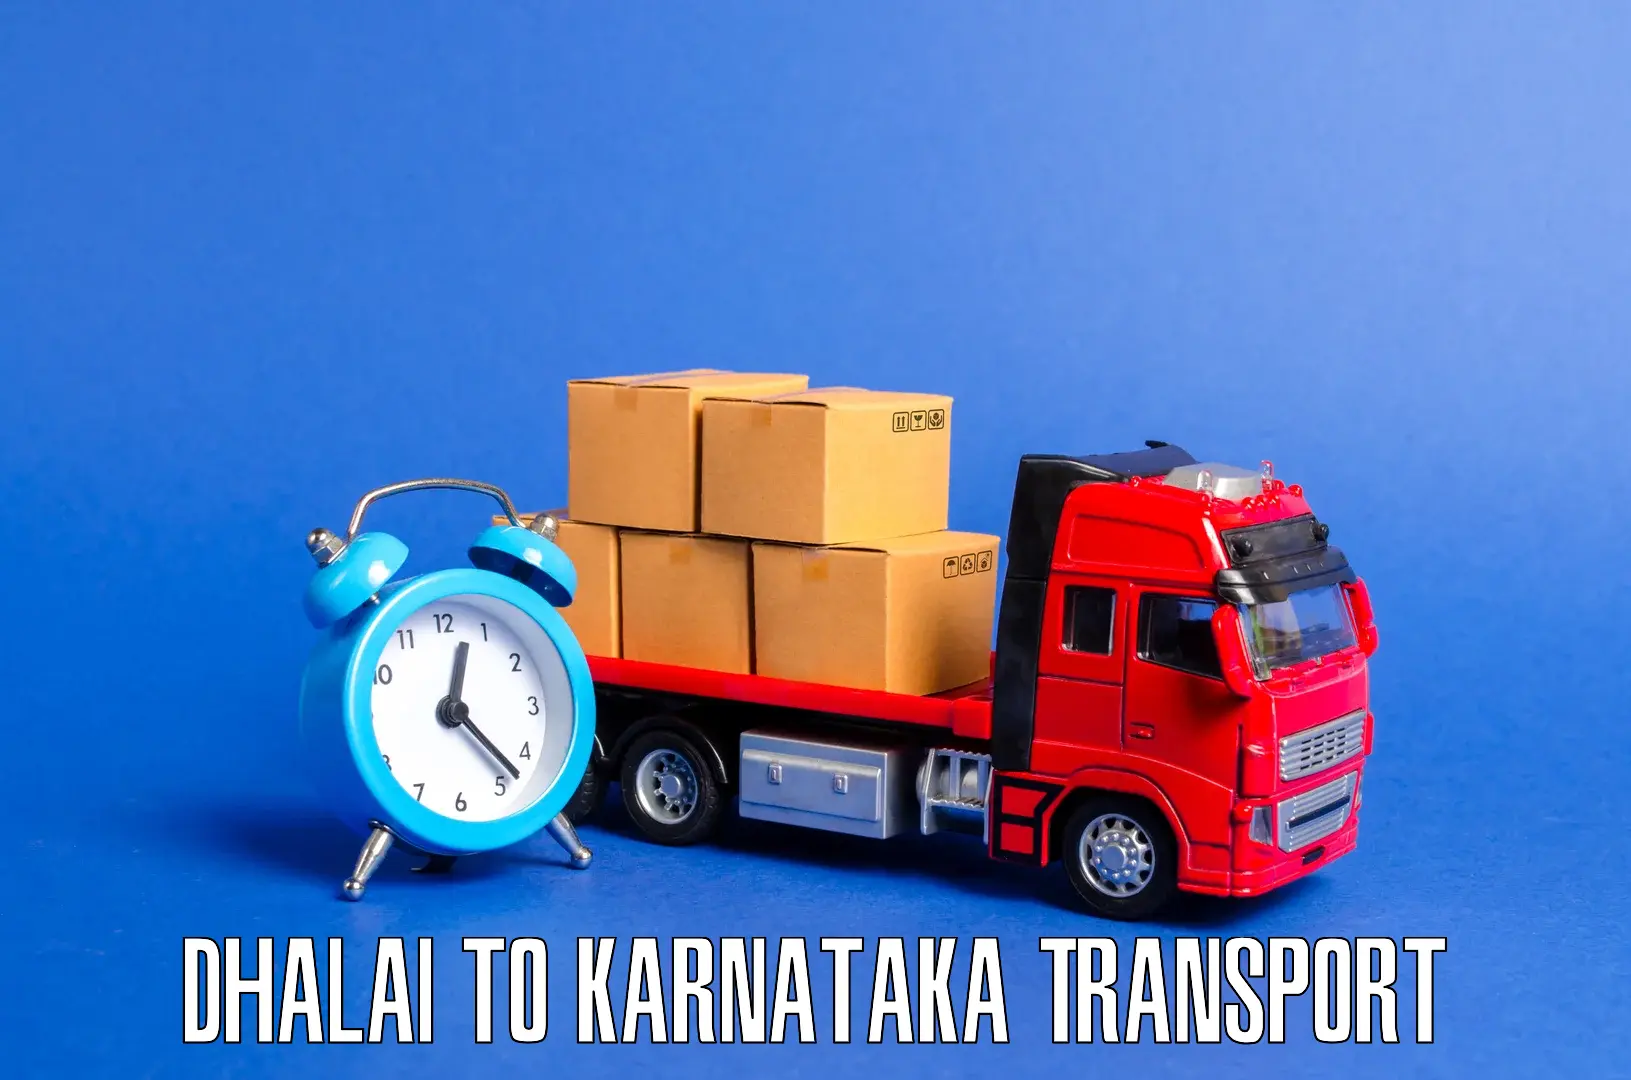 Nationwide transport services Dhalai to Karnataka